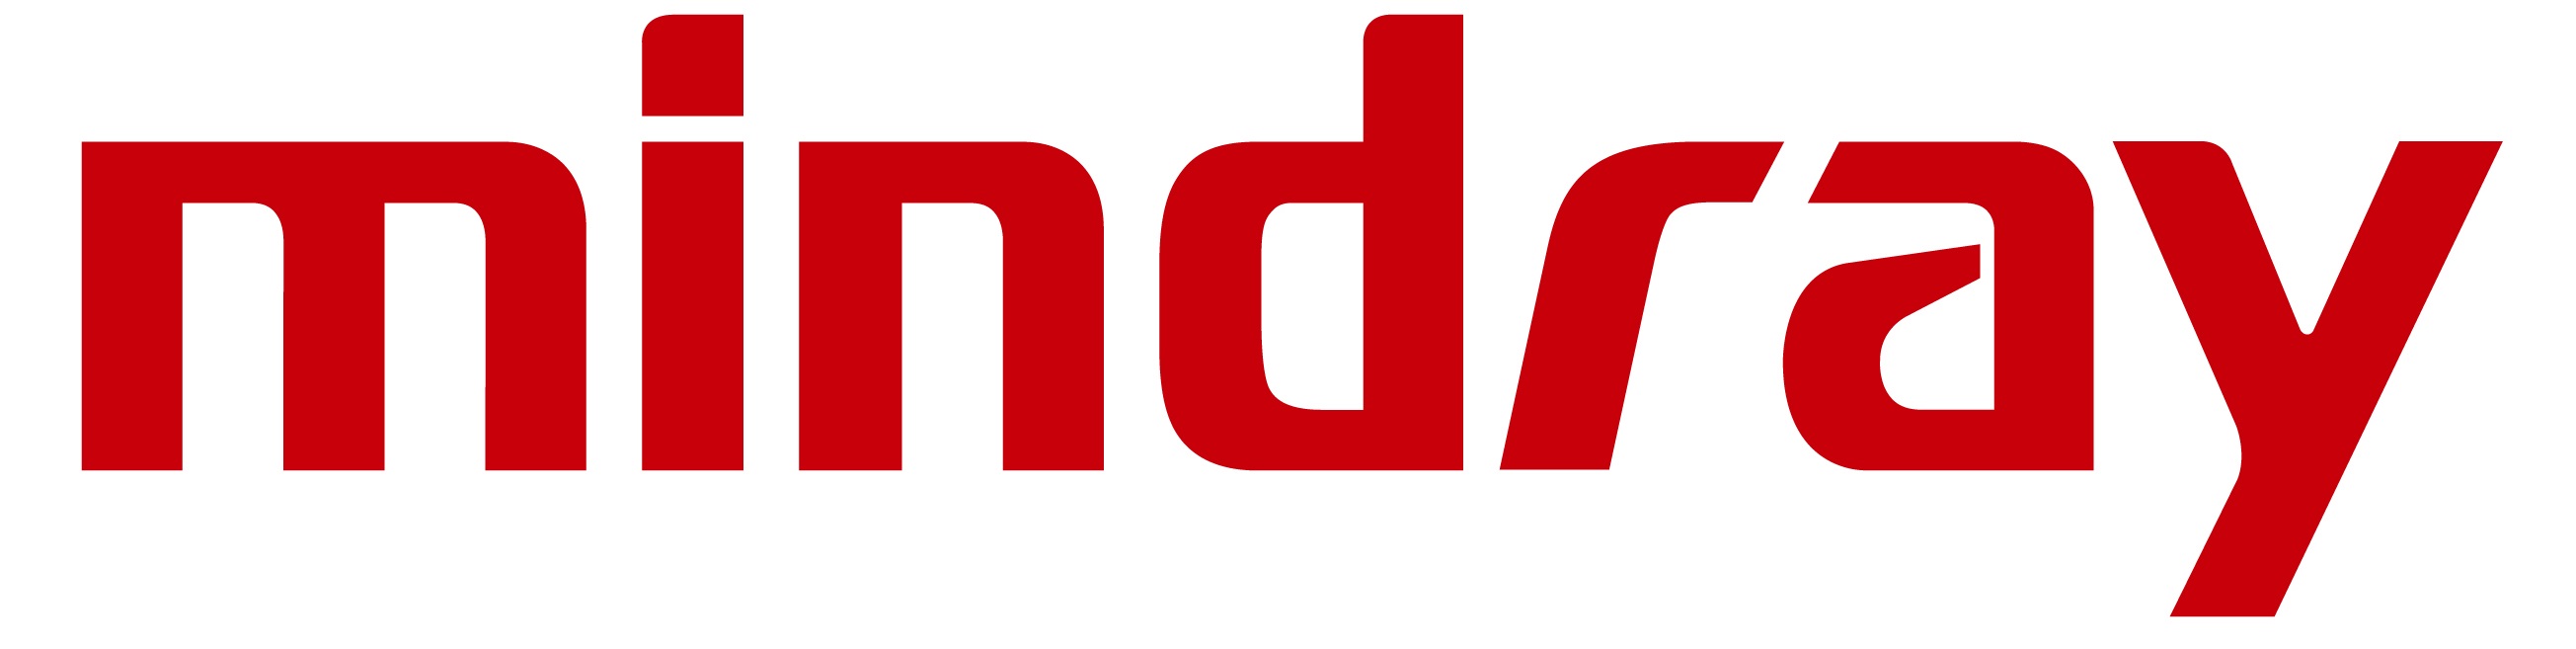 Mindray_logo